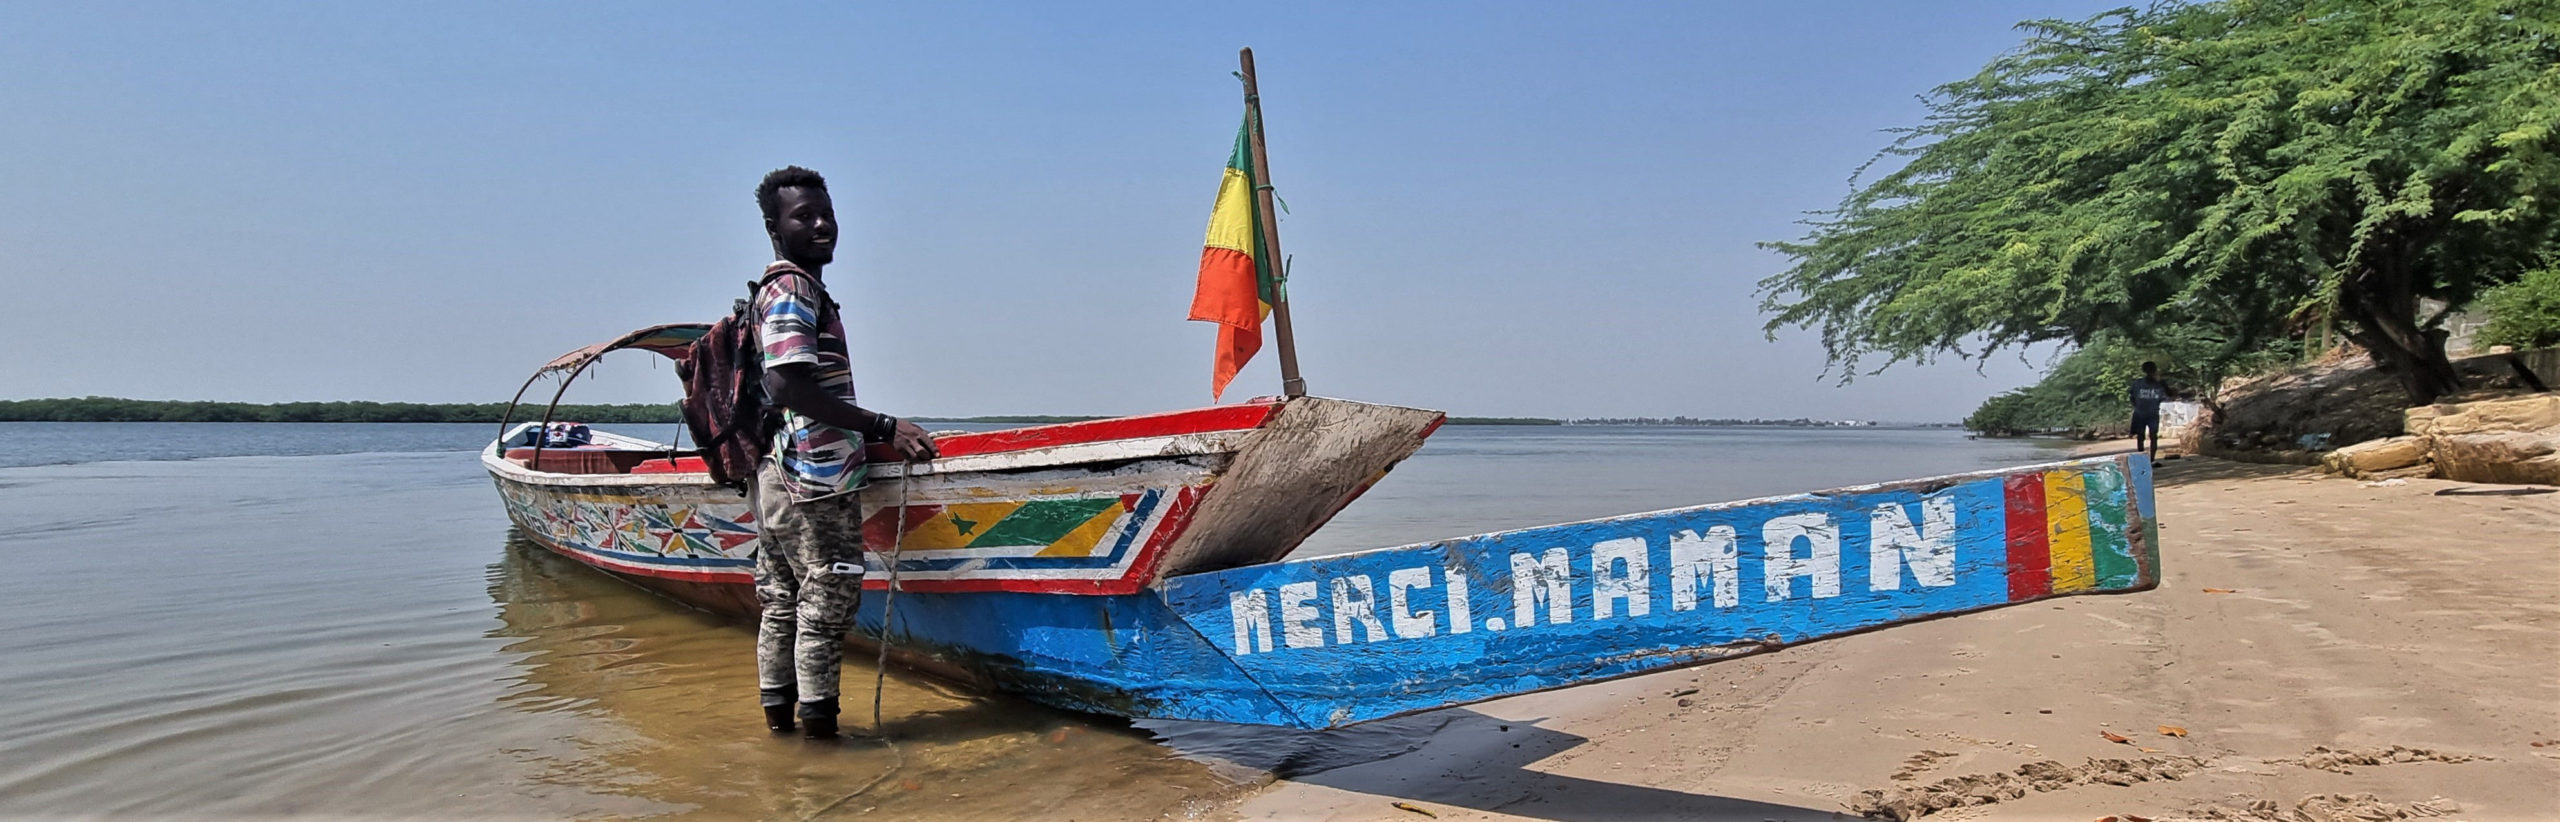 Sénégal, Sine Saloum, l'esprit de la Teranga